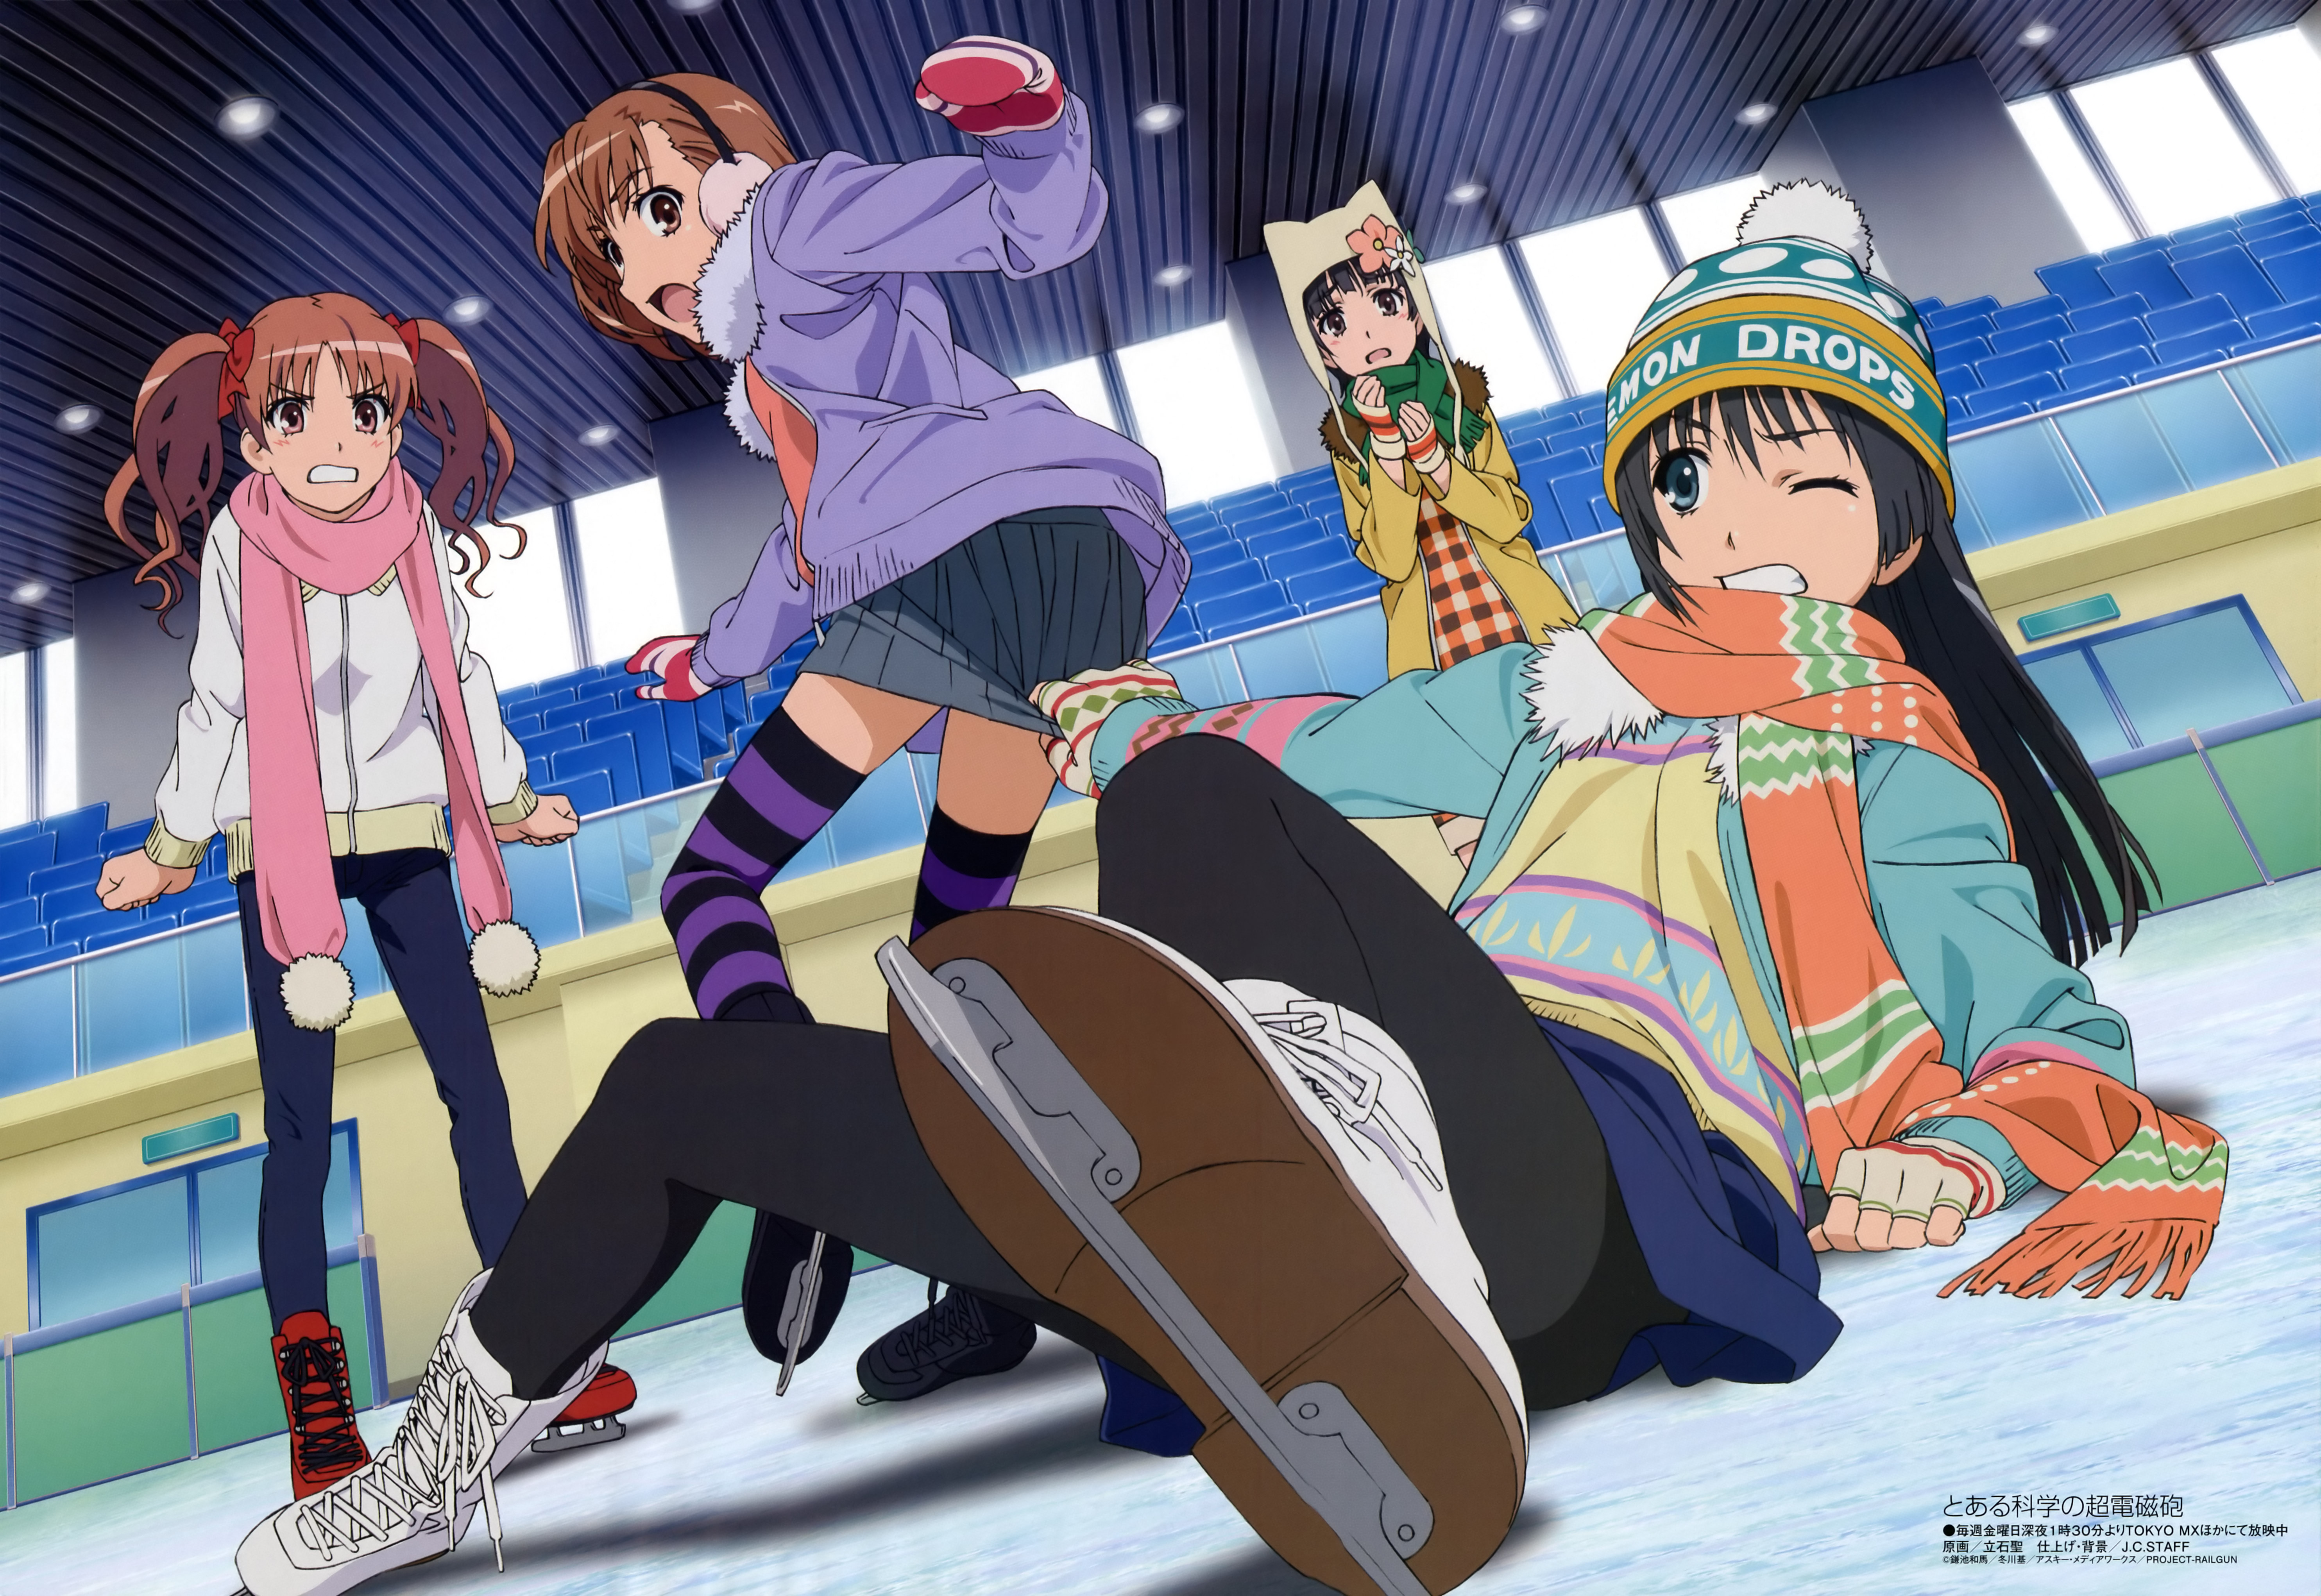 A Certain Scientific Railgun characters: Mikoto Misaka, Kuroko Shirai, Ruiko Saten, Kazari Uiharu.